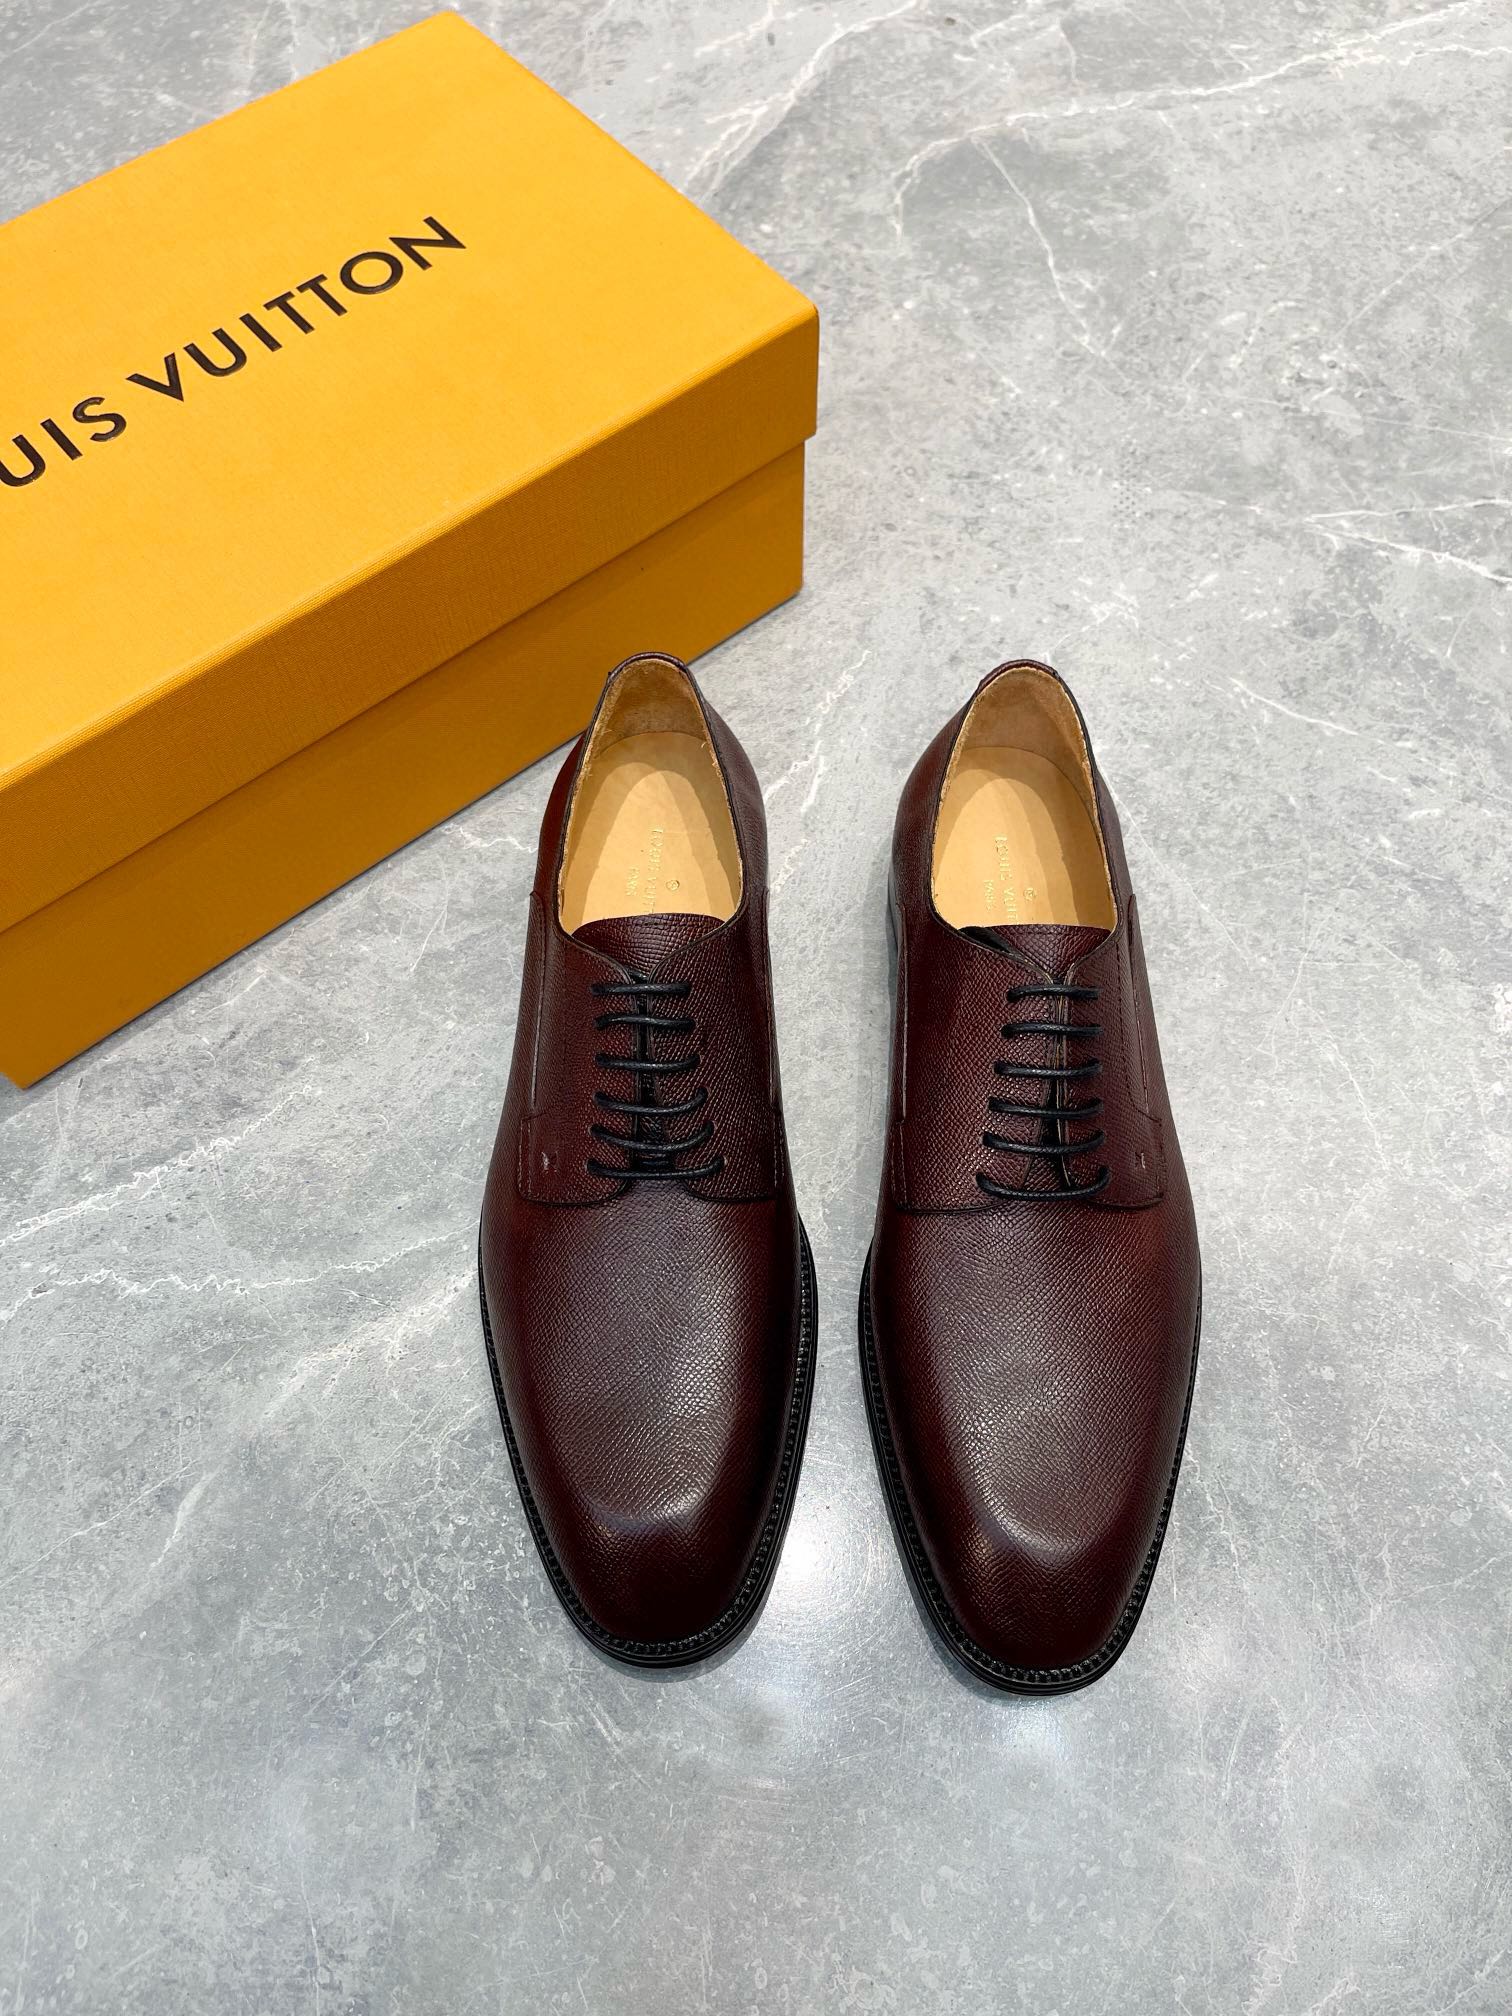 Louis Vuitton Shoes Plain Toe Black Men Calfskin Cowhide Genuine Leather